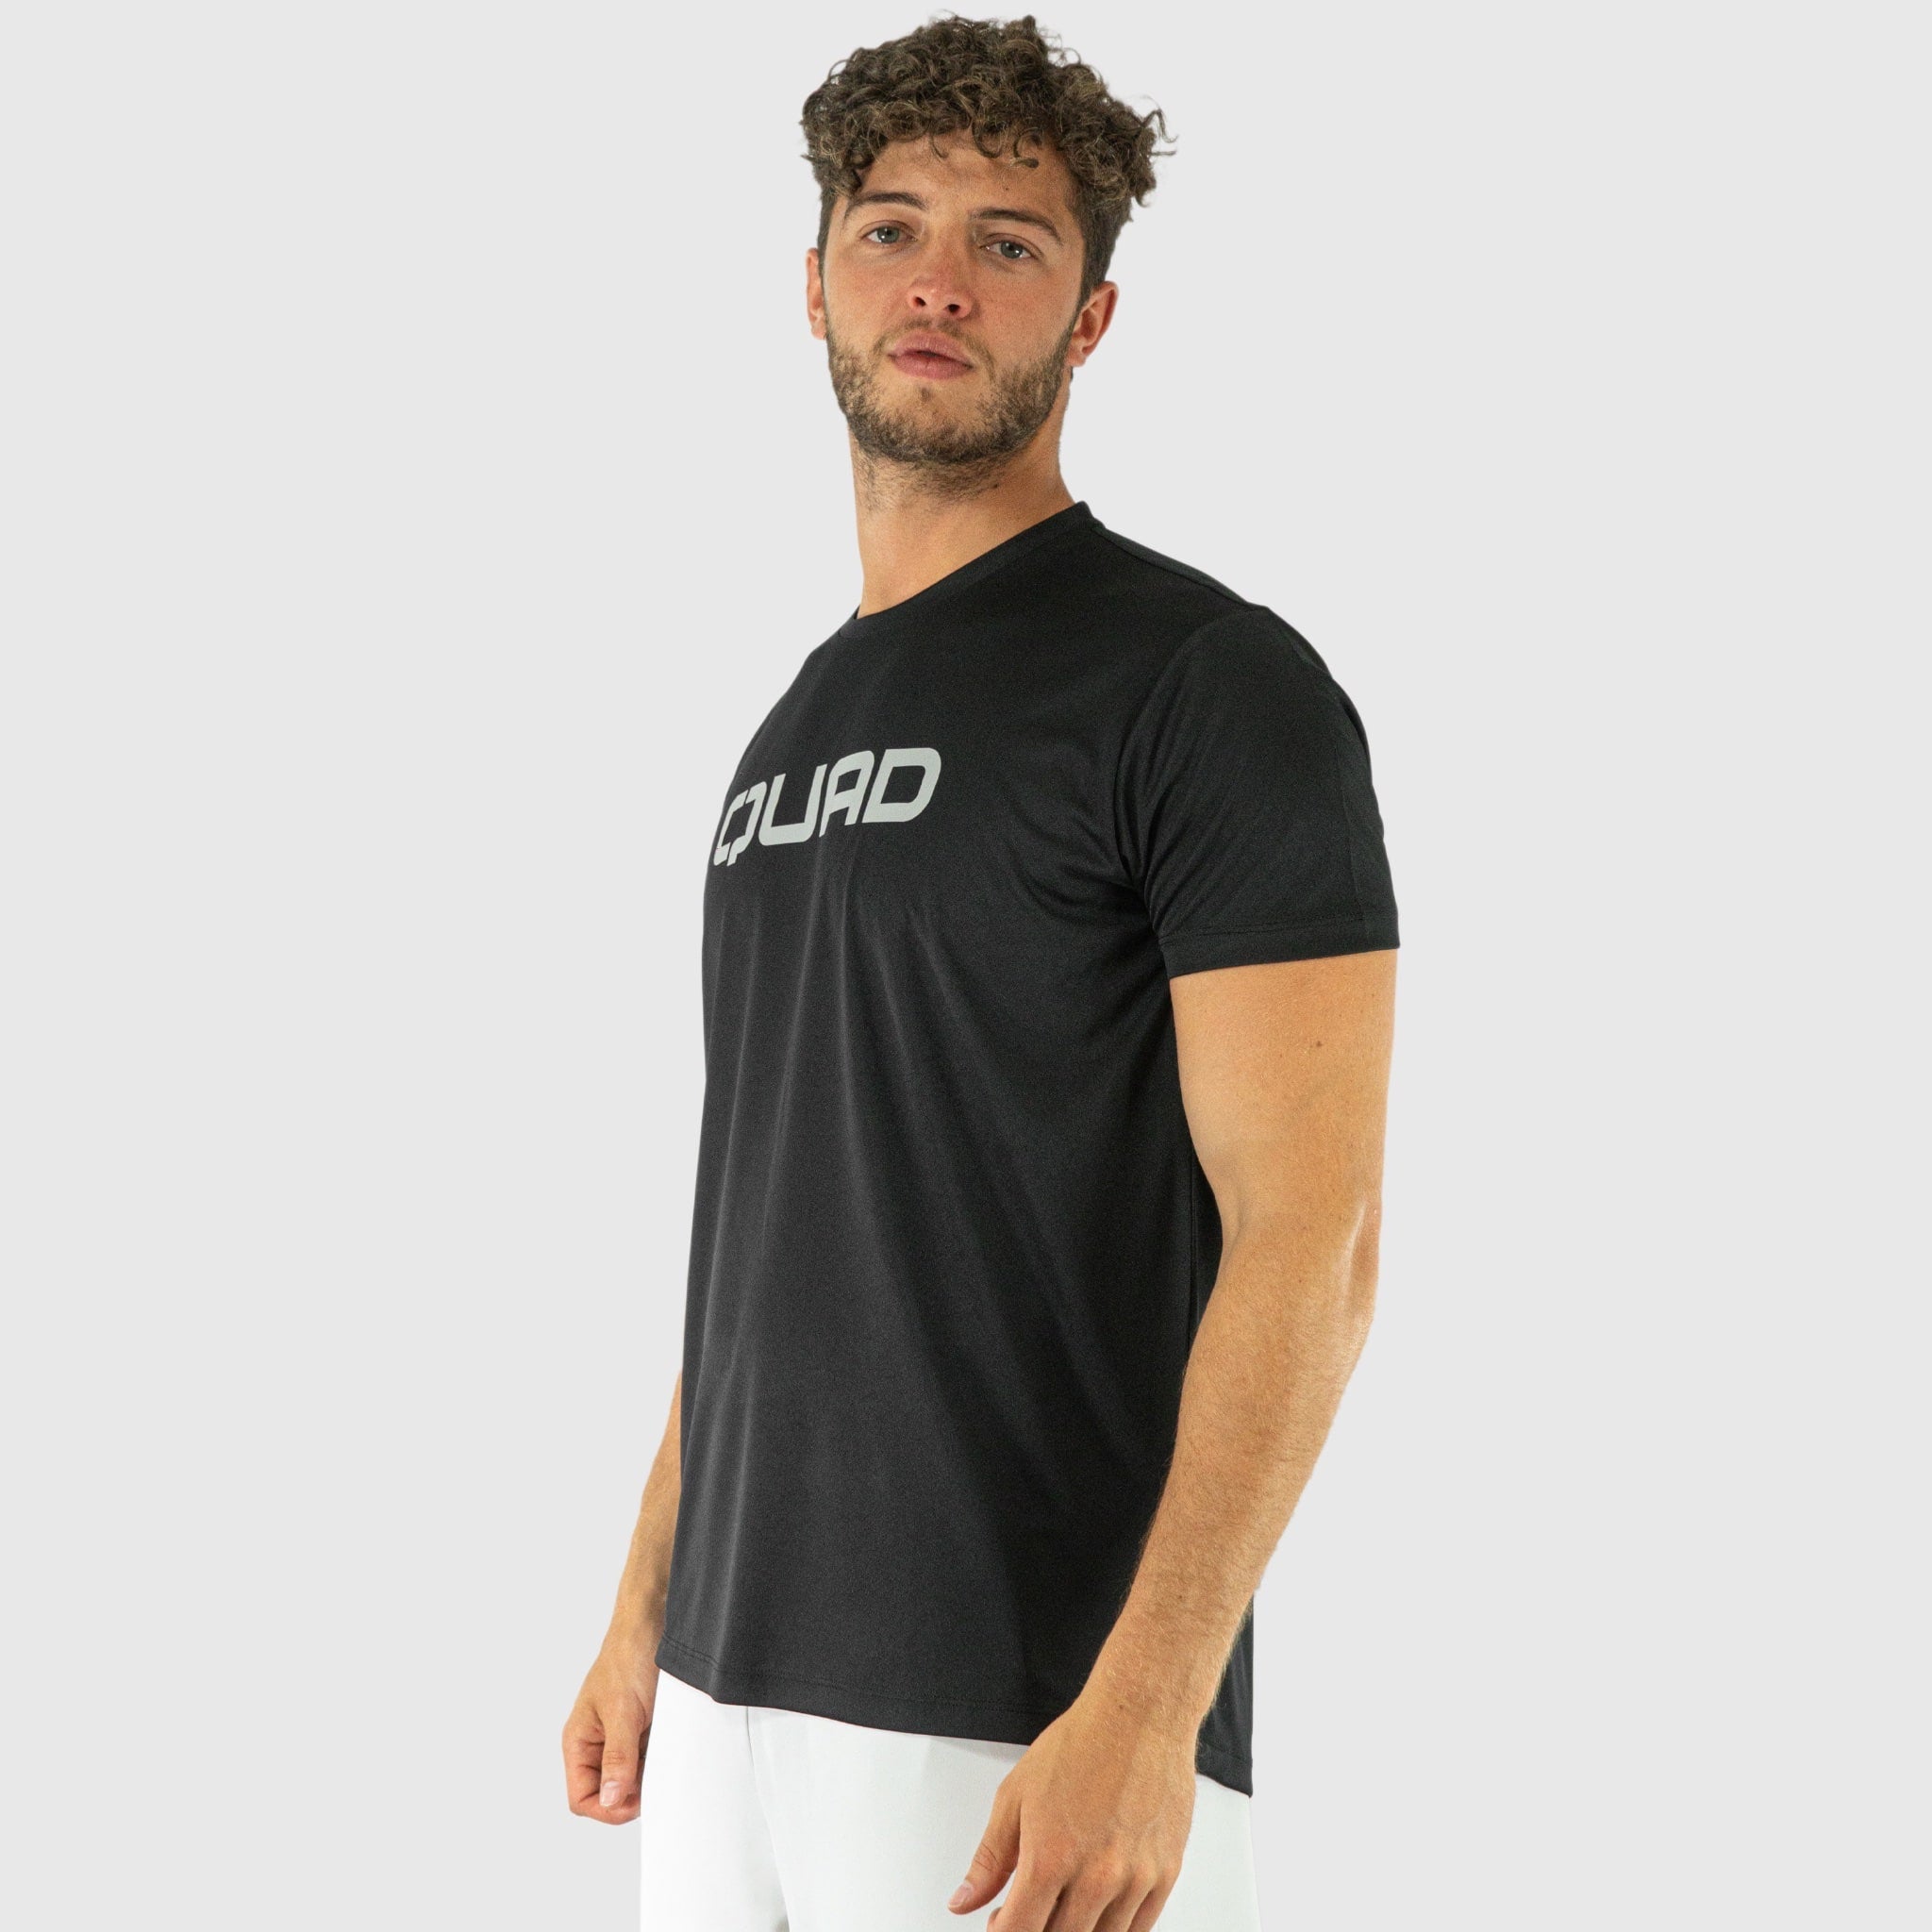 Quad Padel Essential t shirt black side